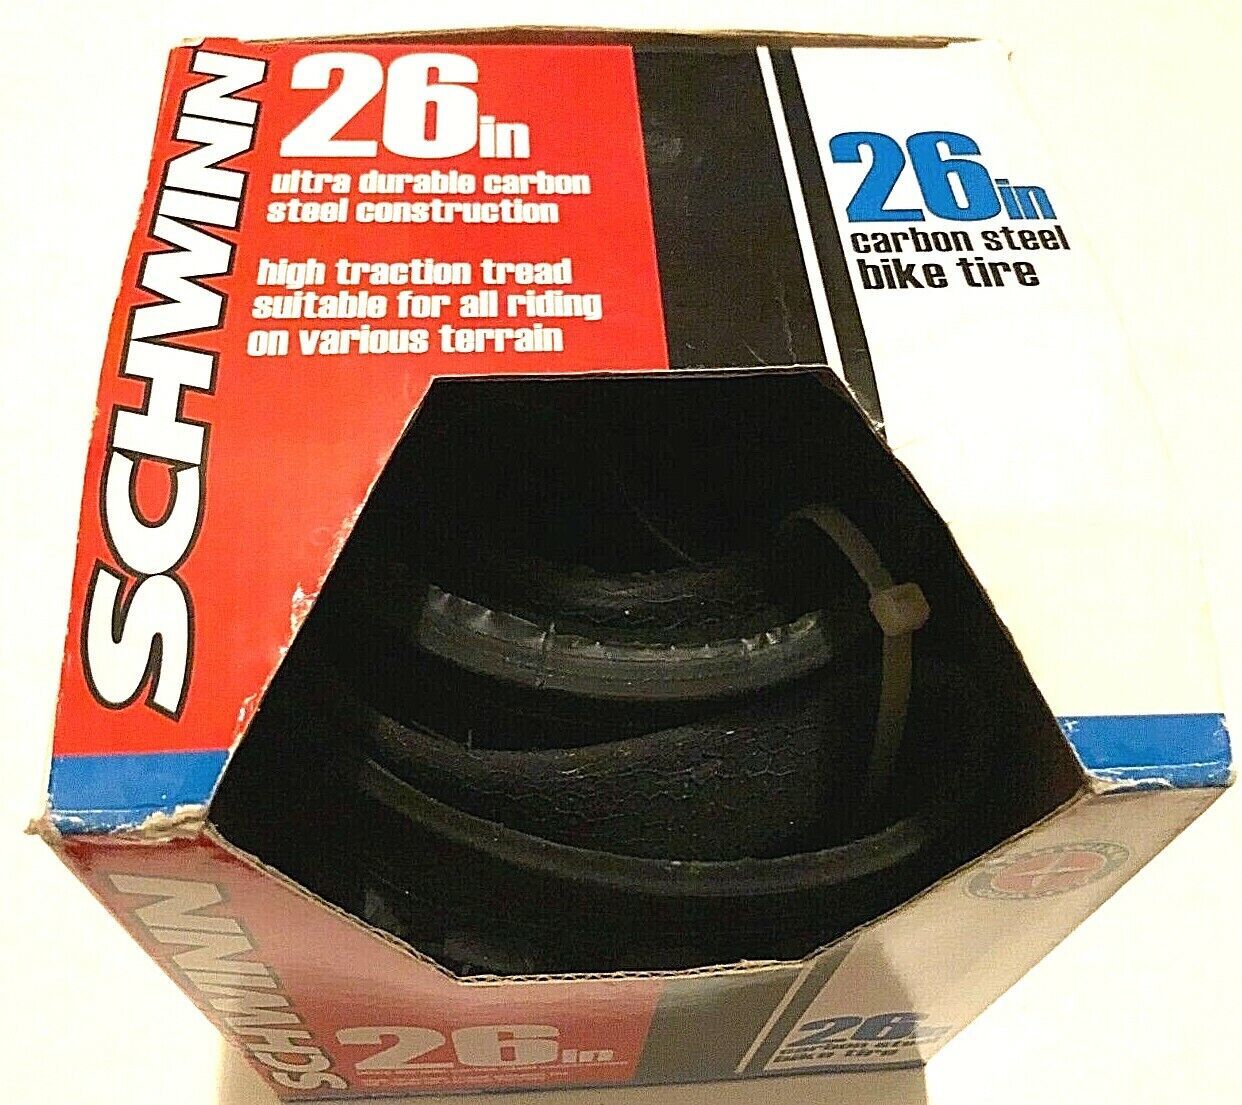 Schwinn Mountain Carbon Steel Bike Tire 26" Item No. SW75446 New - $25.85